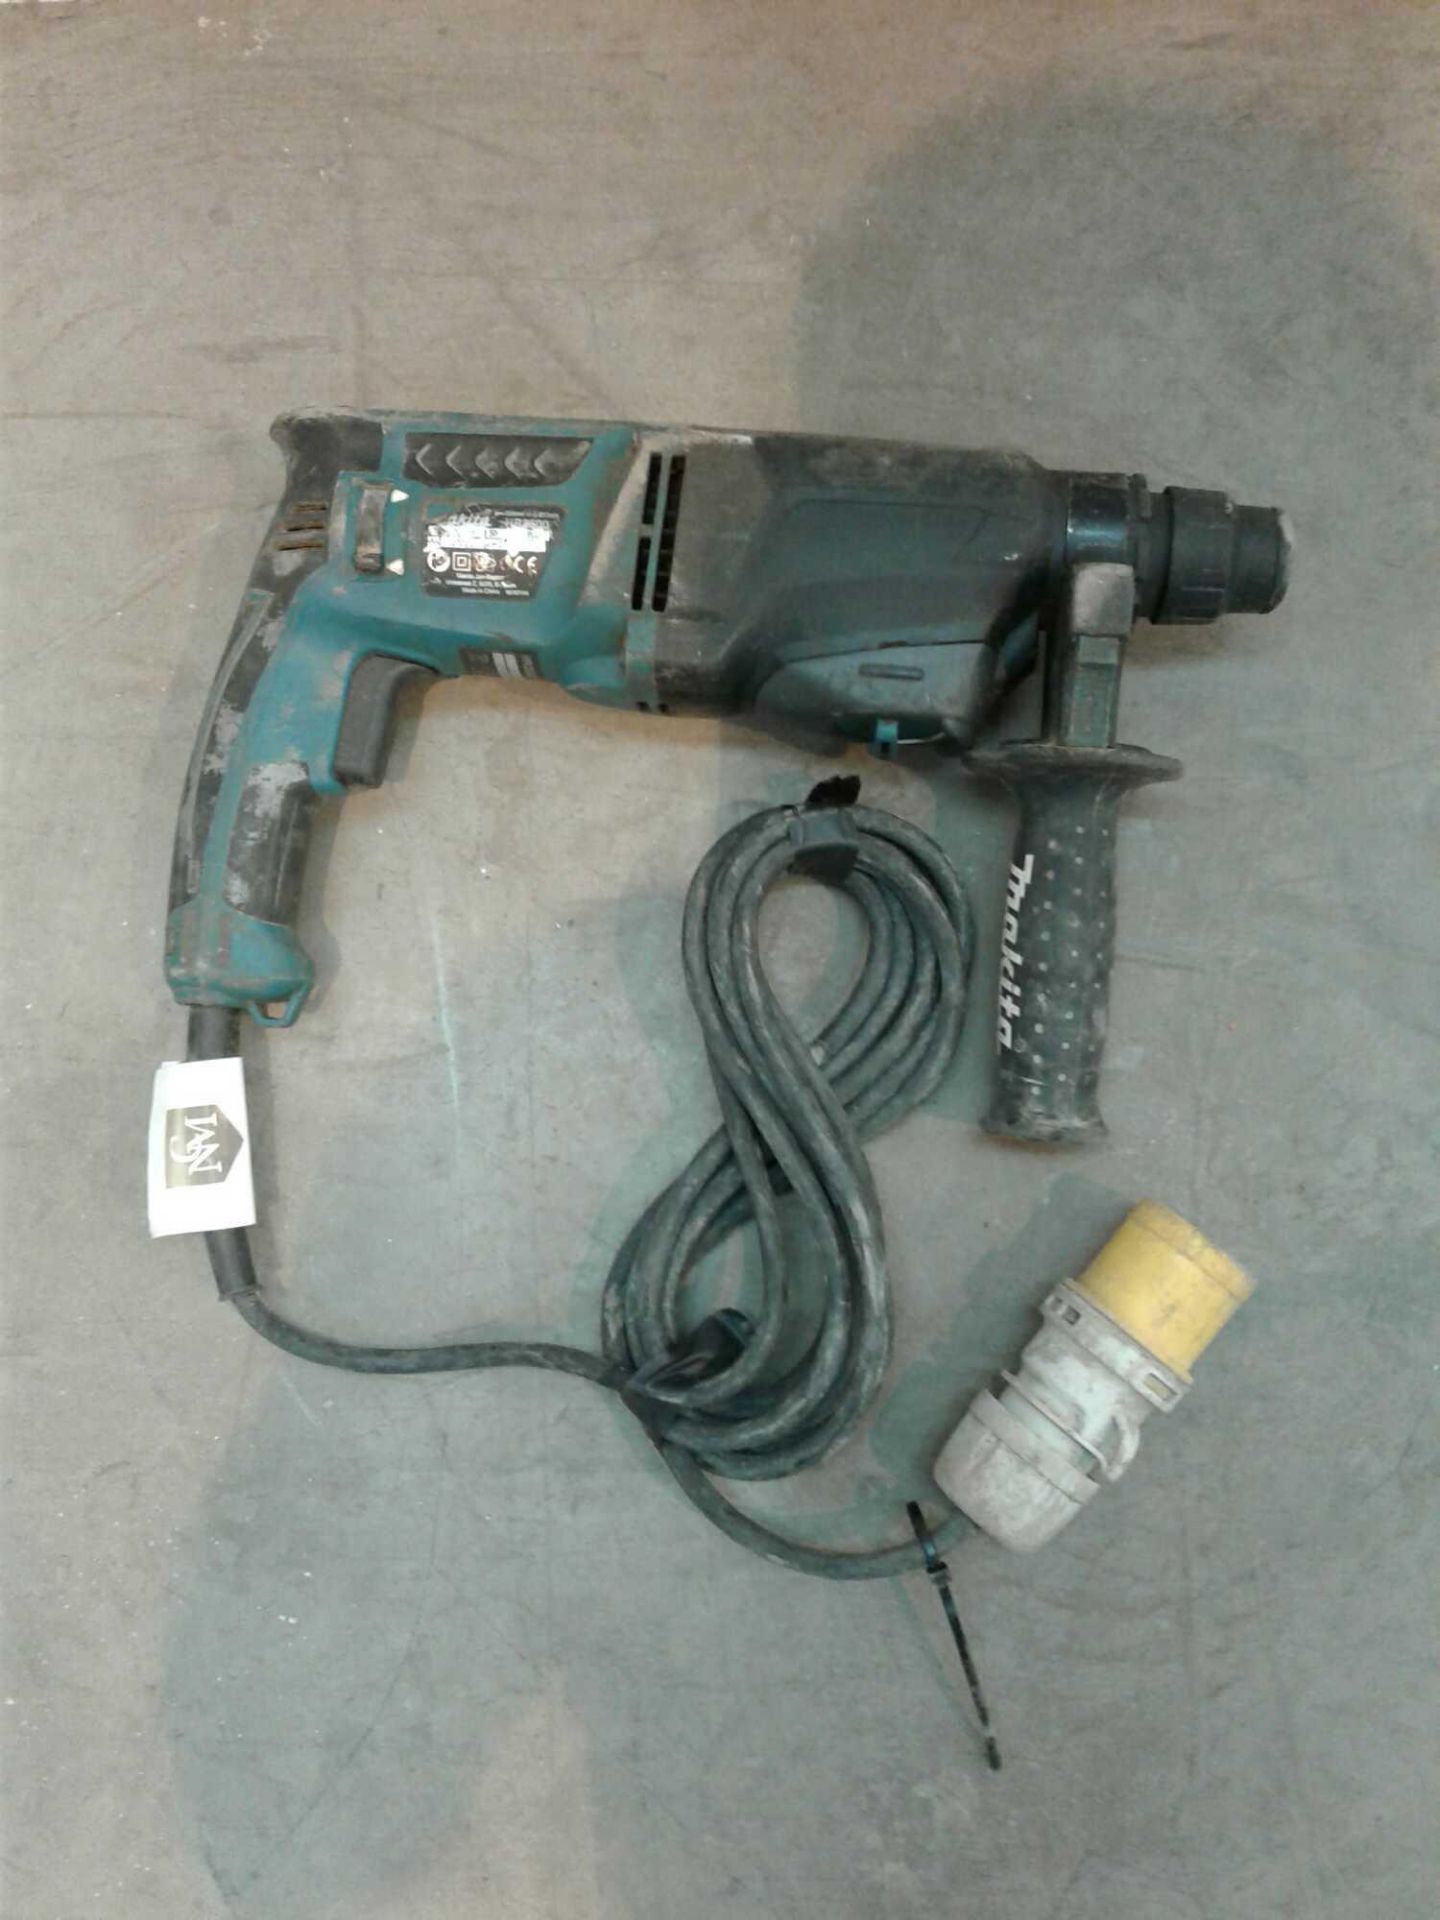 Makita hammer drill breaker 110 V - Image 2 of 2